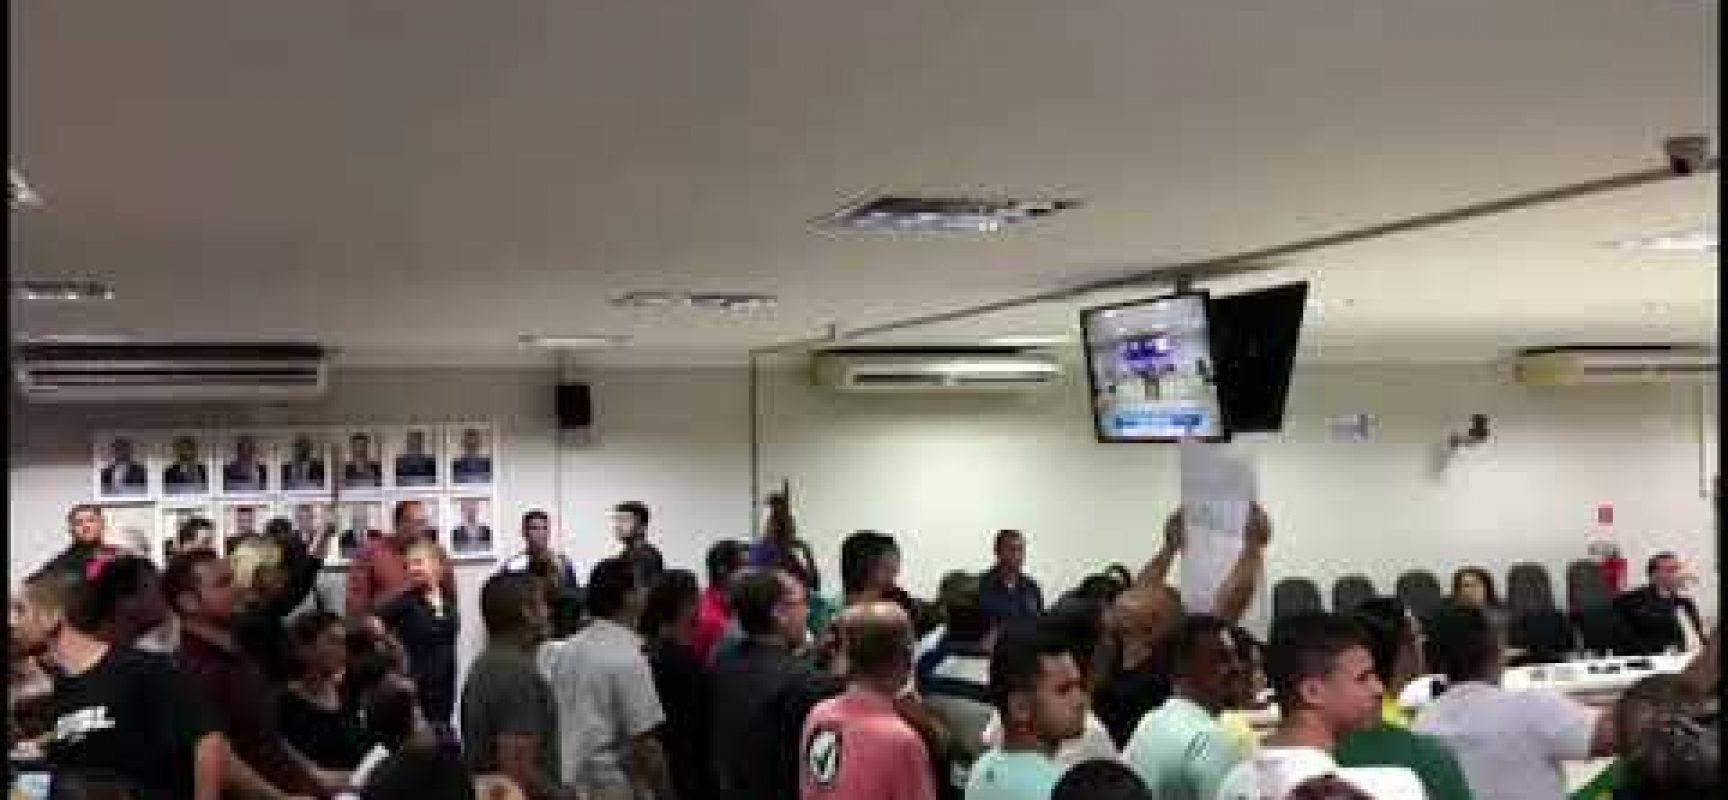 Coronavírus: Câmara de Vereadores suspende sessões e eventos públicos no legislativo